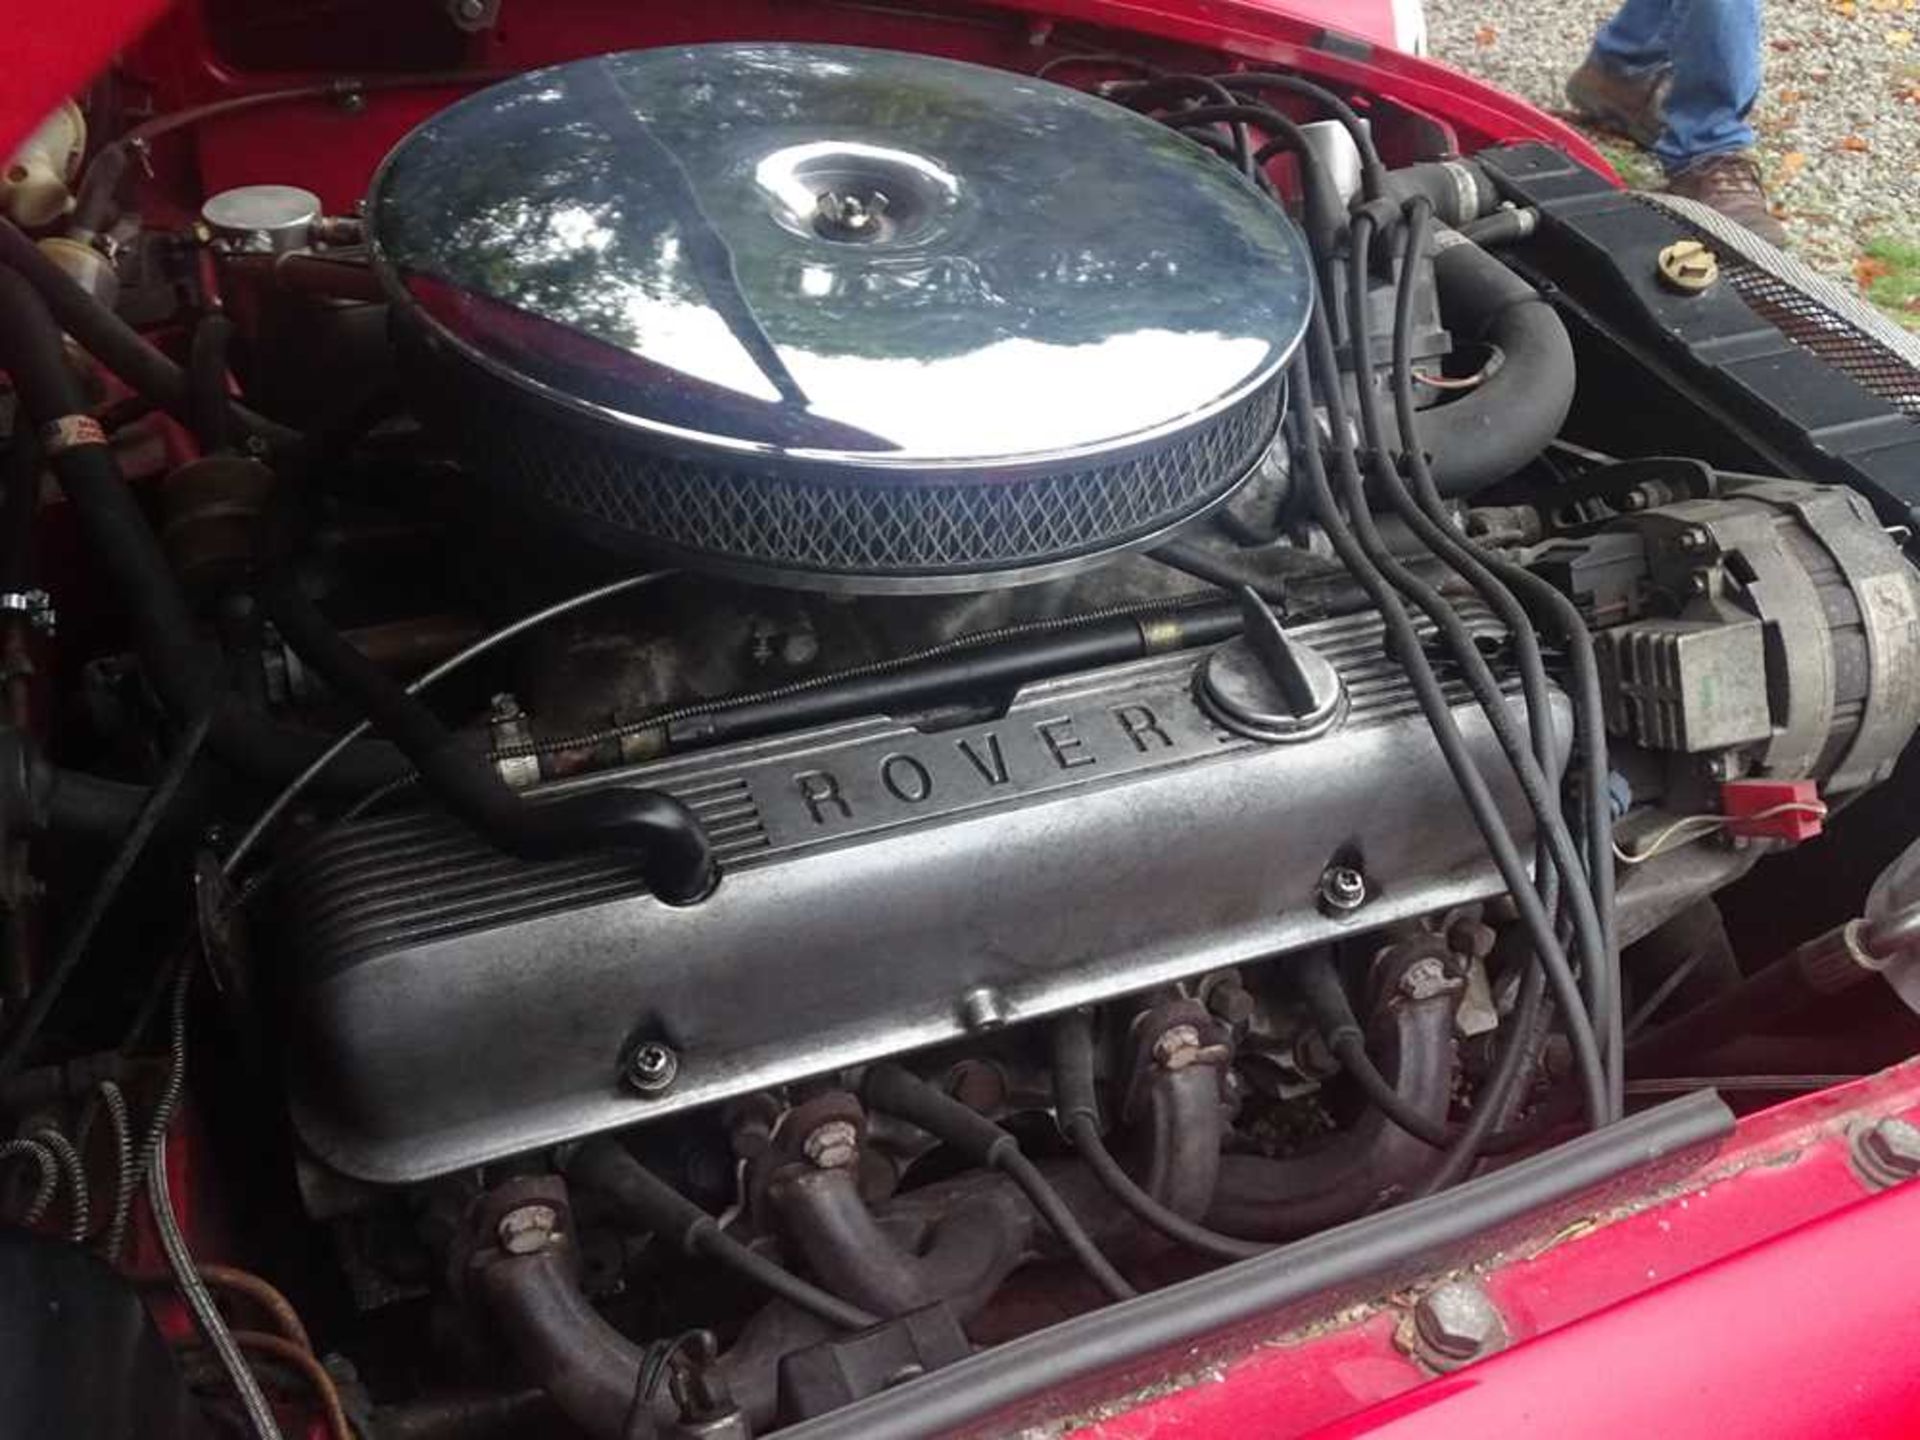 1970 MG B V8 Roadster - Image 22 of 29